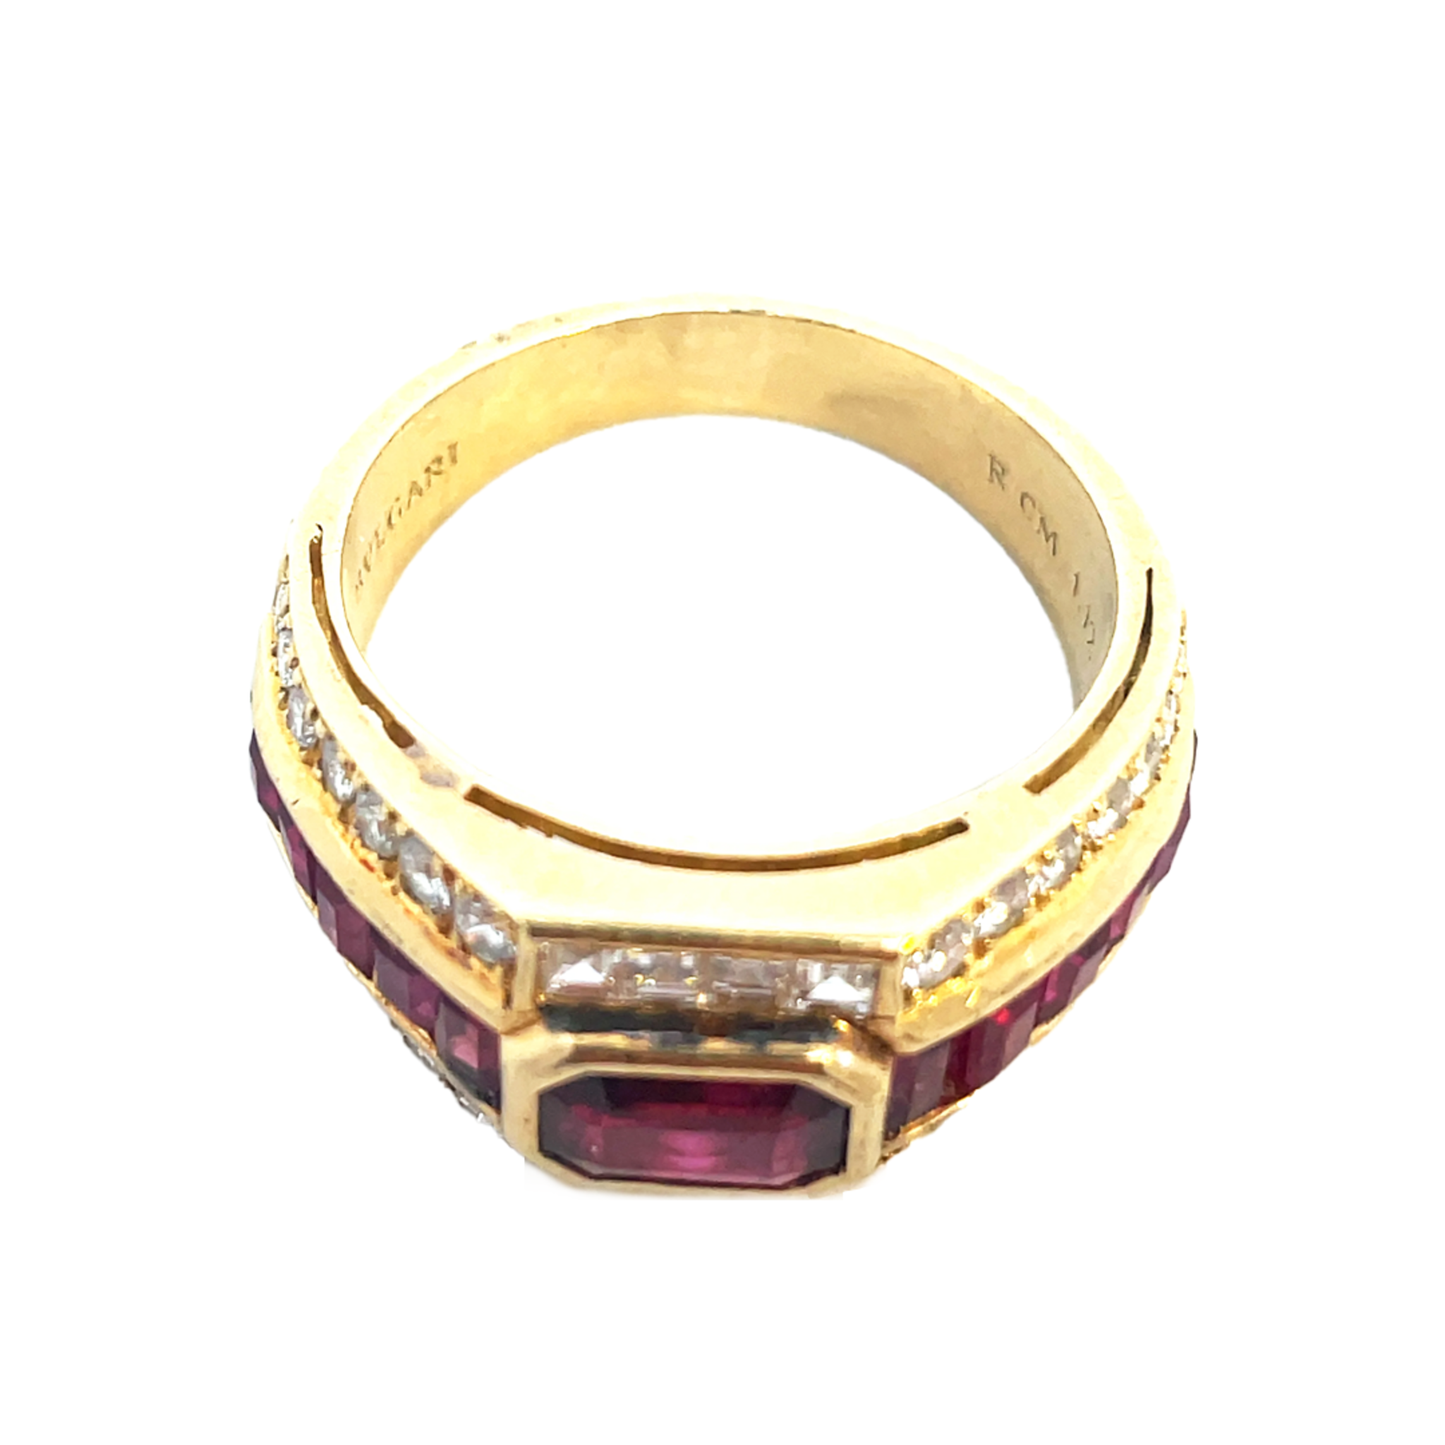 Bulgari 1980s 18KT Yellow Gold Ruby & Diamond Trombino Ring close-up of signature